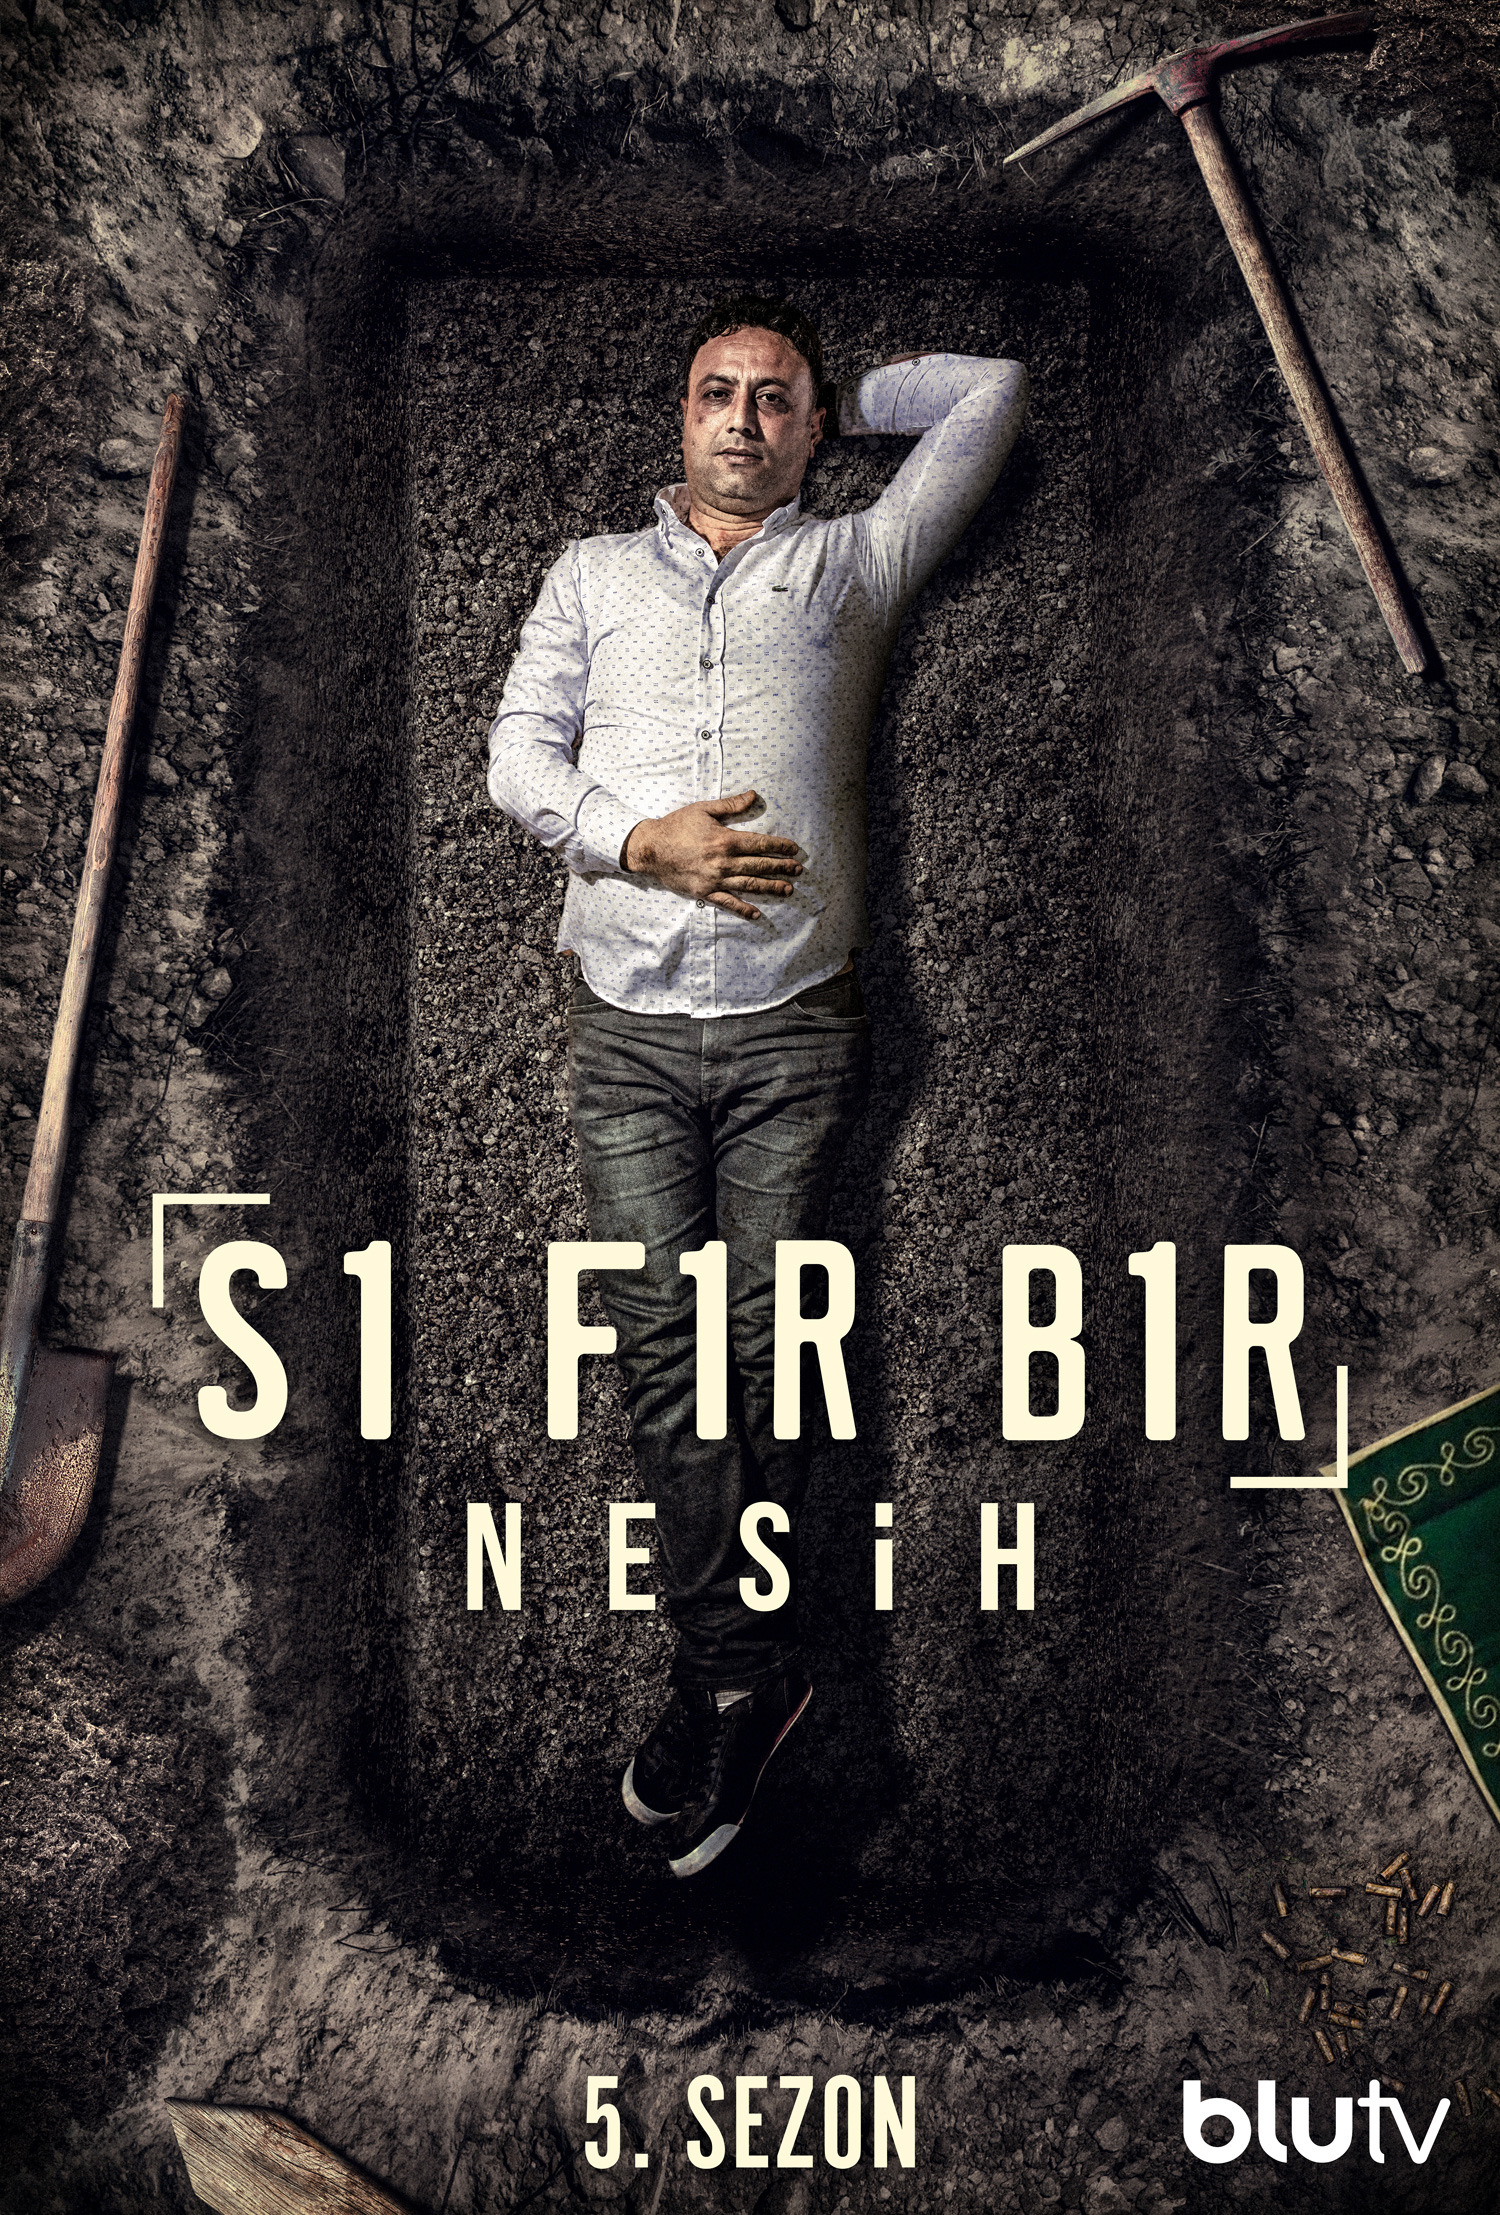 Mega Sized TV Poster Image for Sifir Bir (#17 of 23)